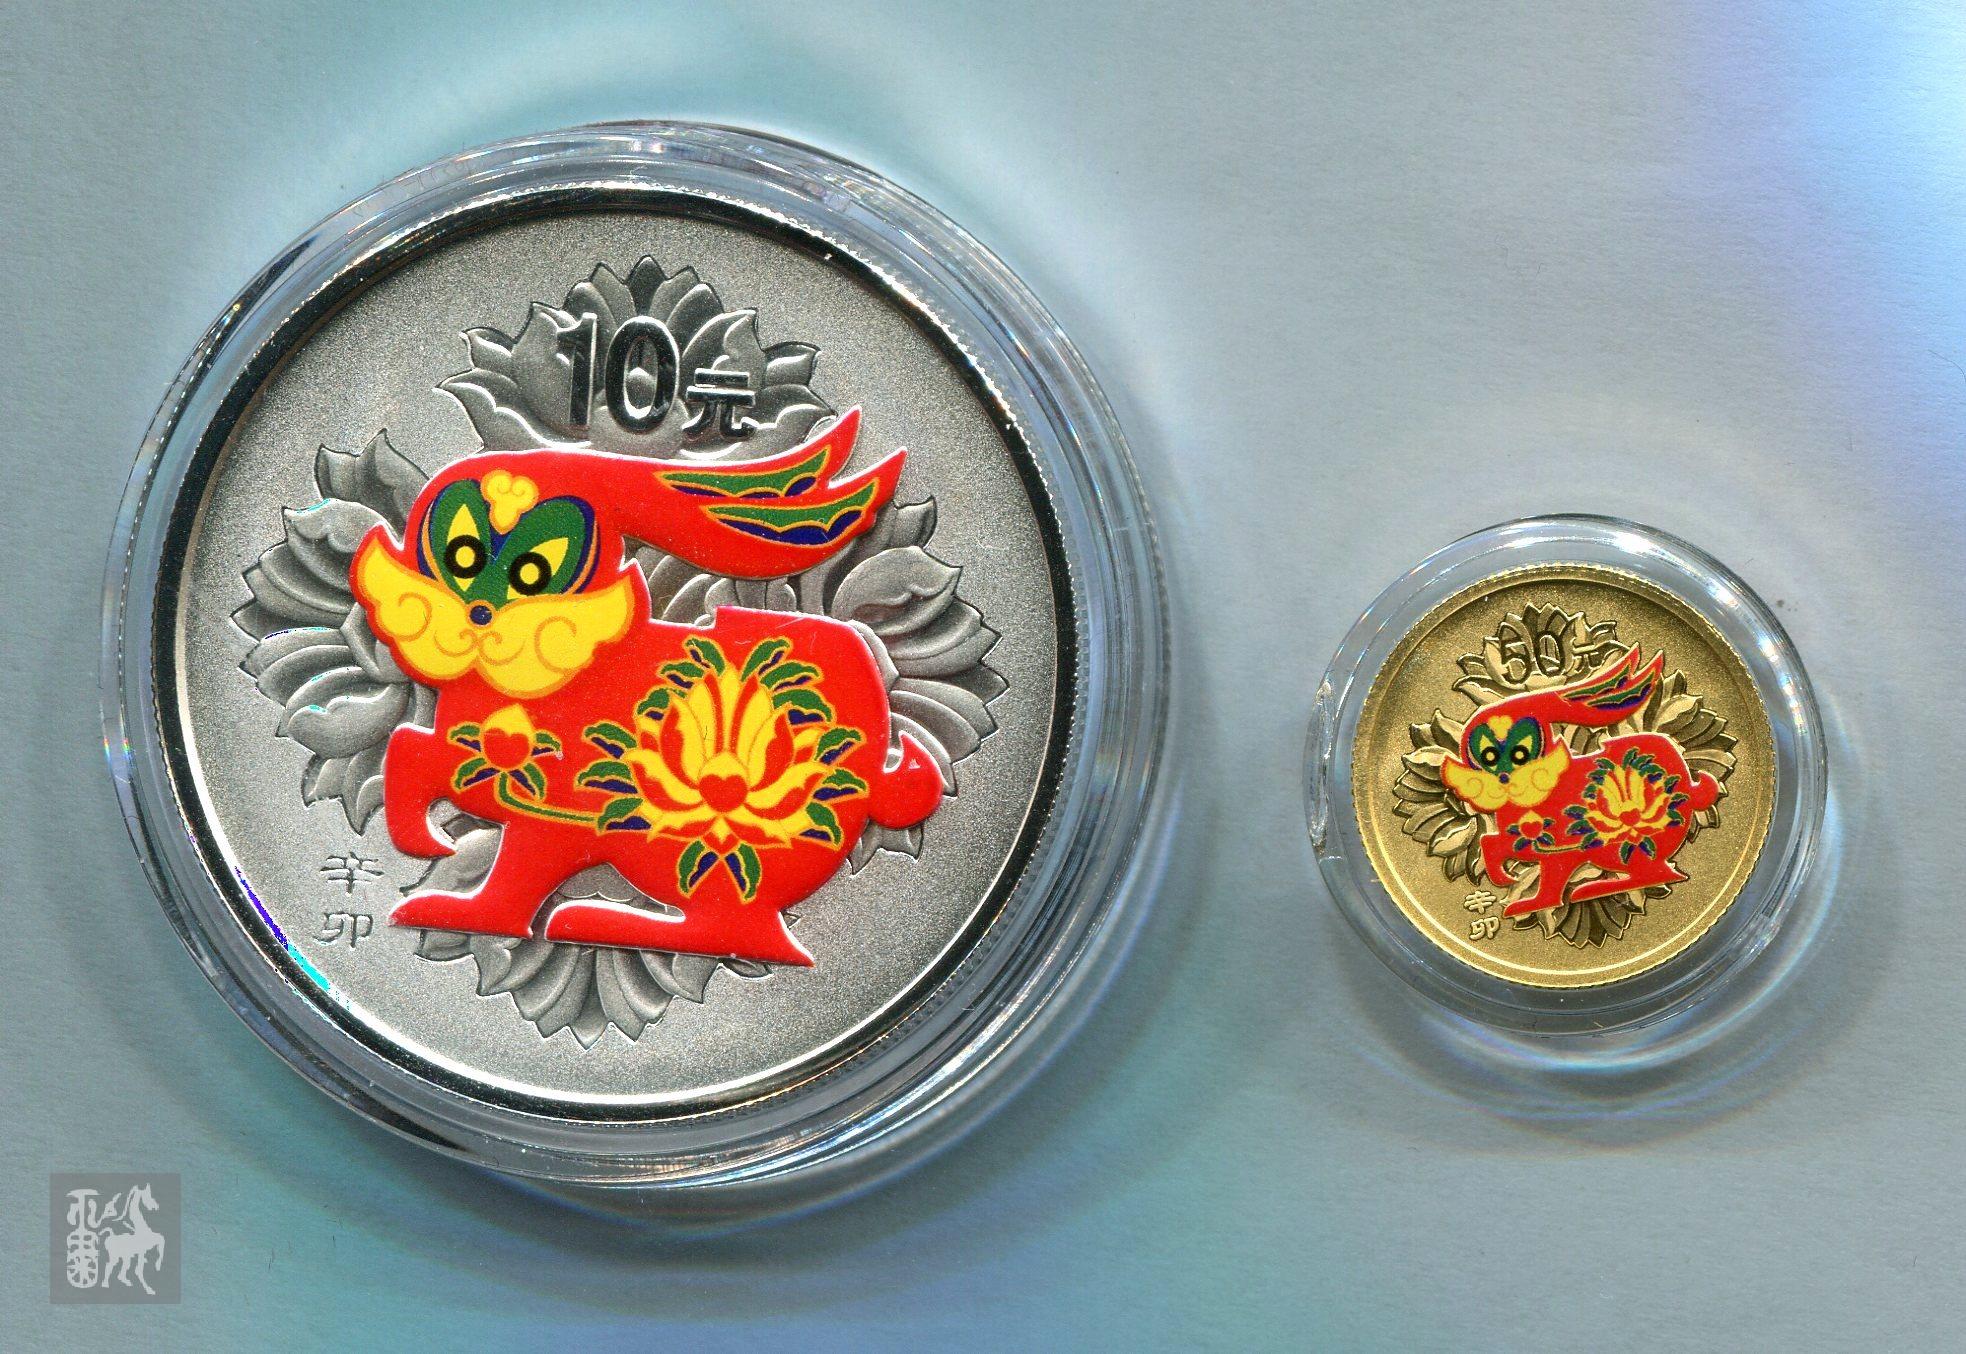 2011年辛卯兔年生肖彩金银币二枚一套(含1/10盎司金,1盎司银,原盒,带